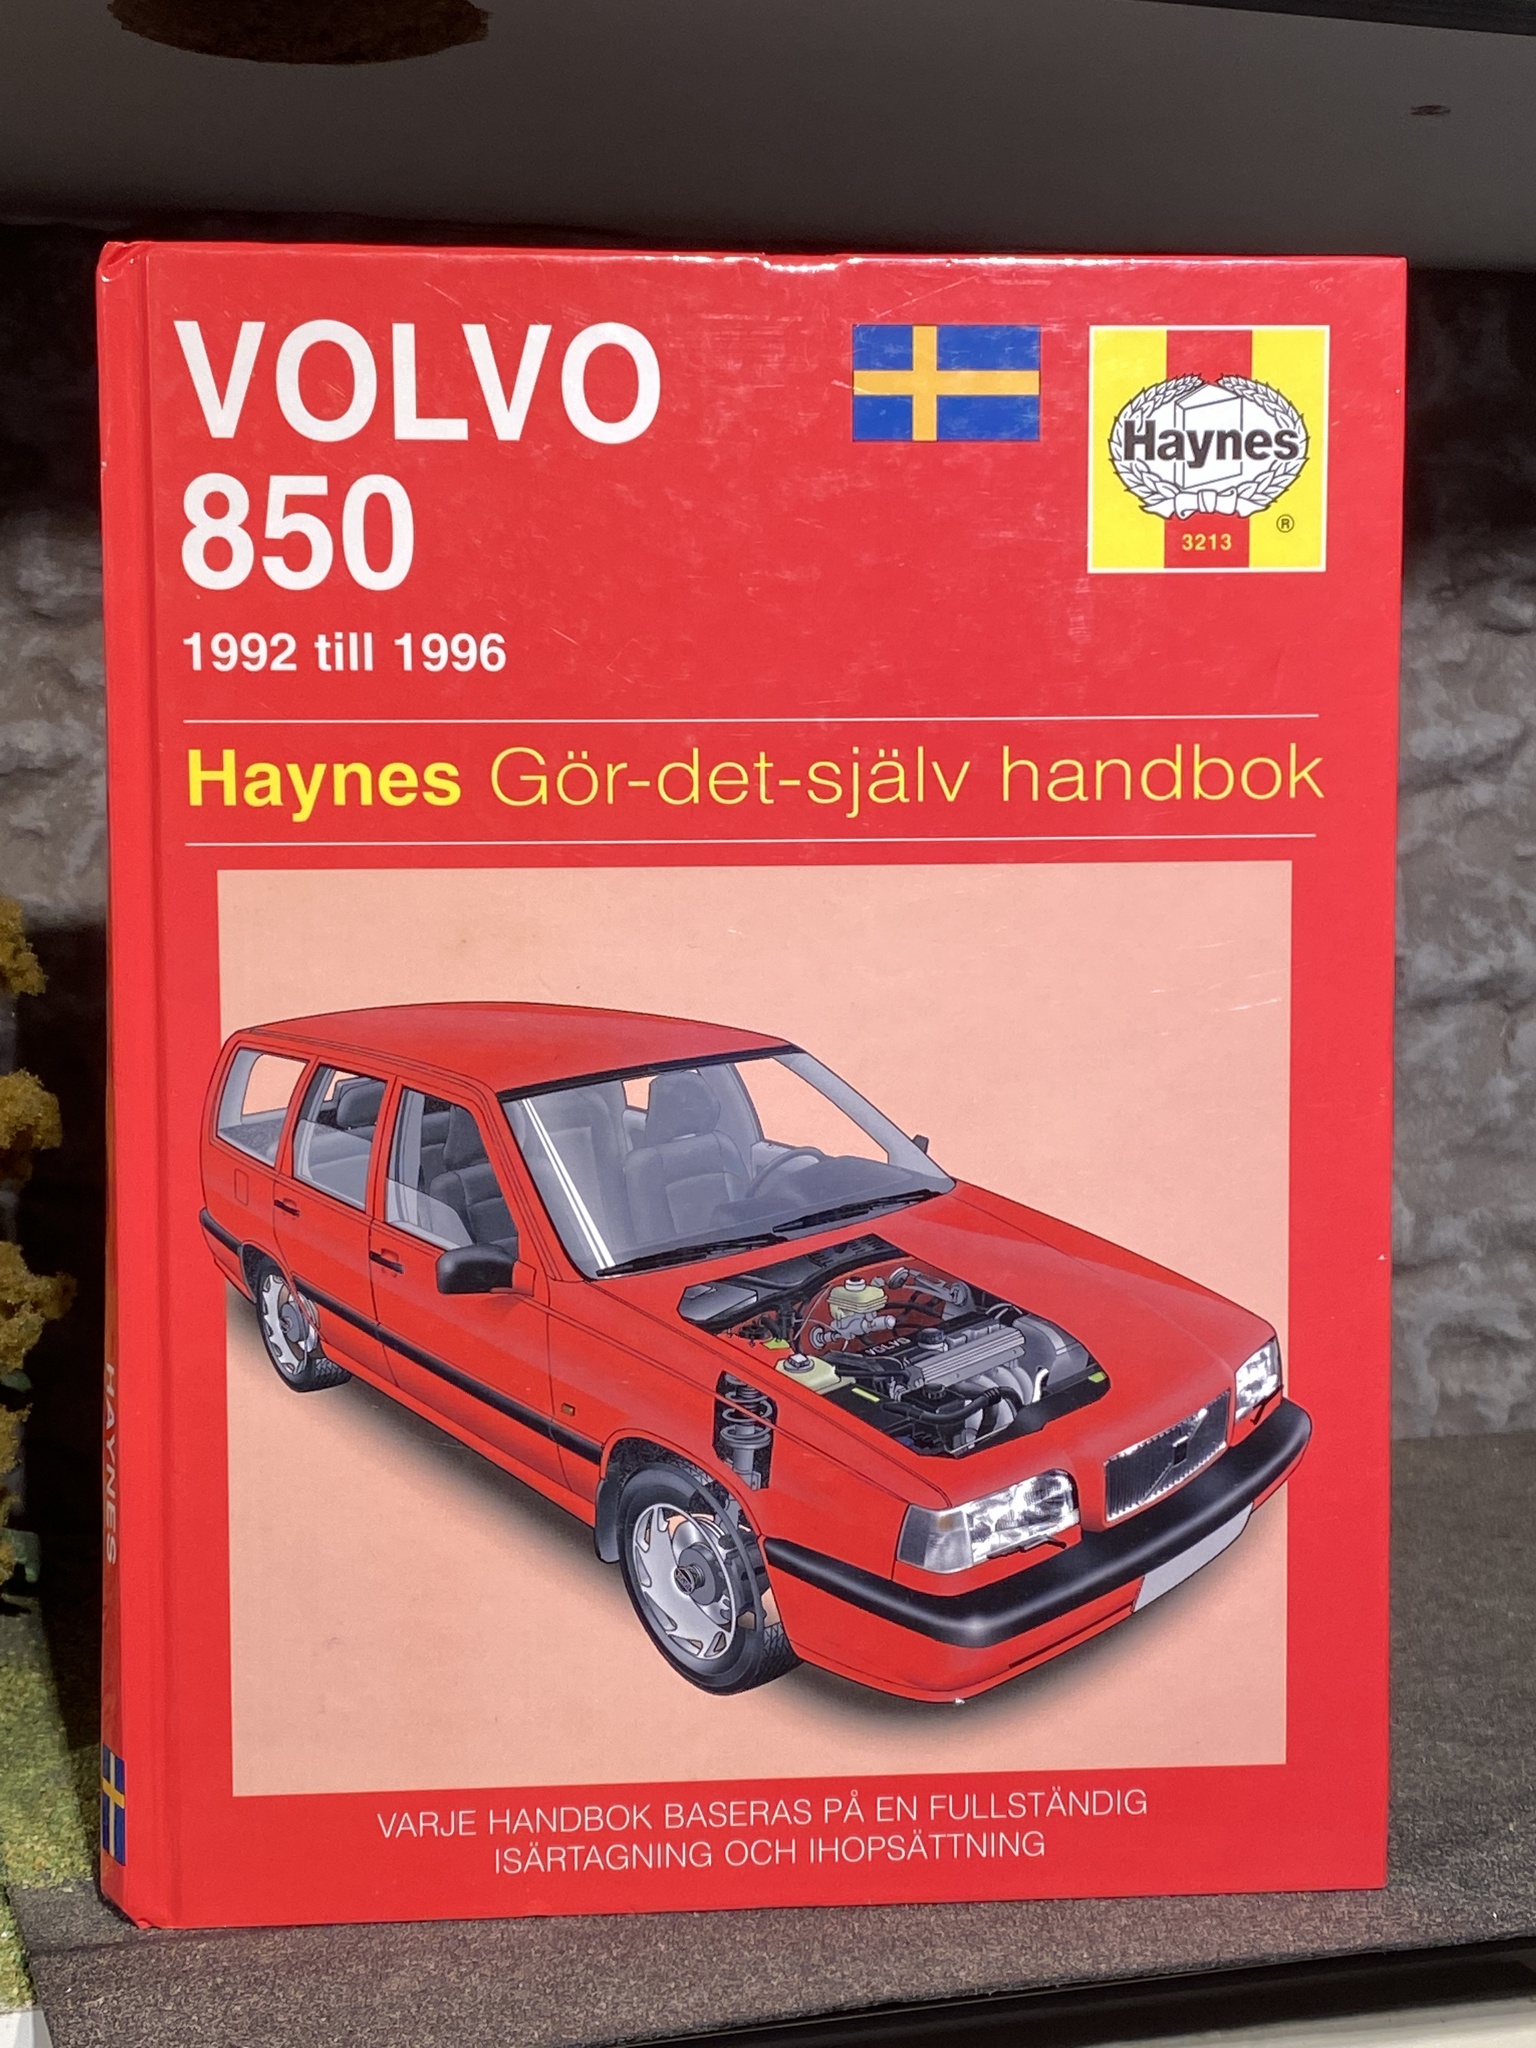 Haynes Reparationshandbok / Instruktionsbok Volvo 850 92-96, bra skick på svenska